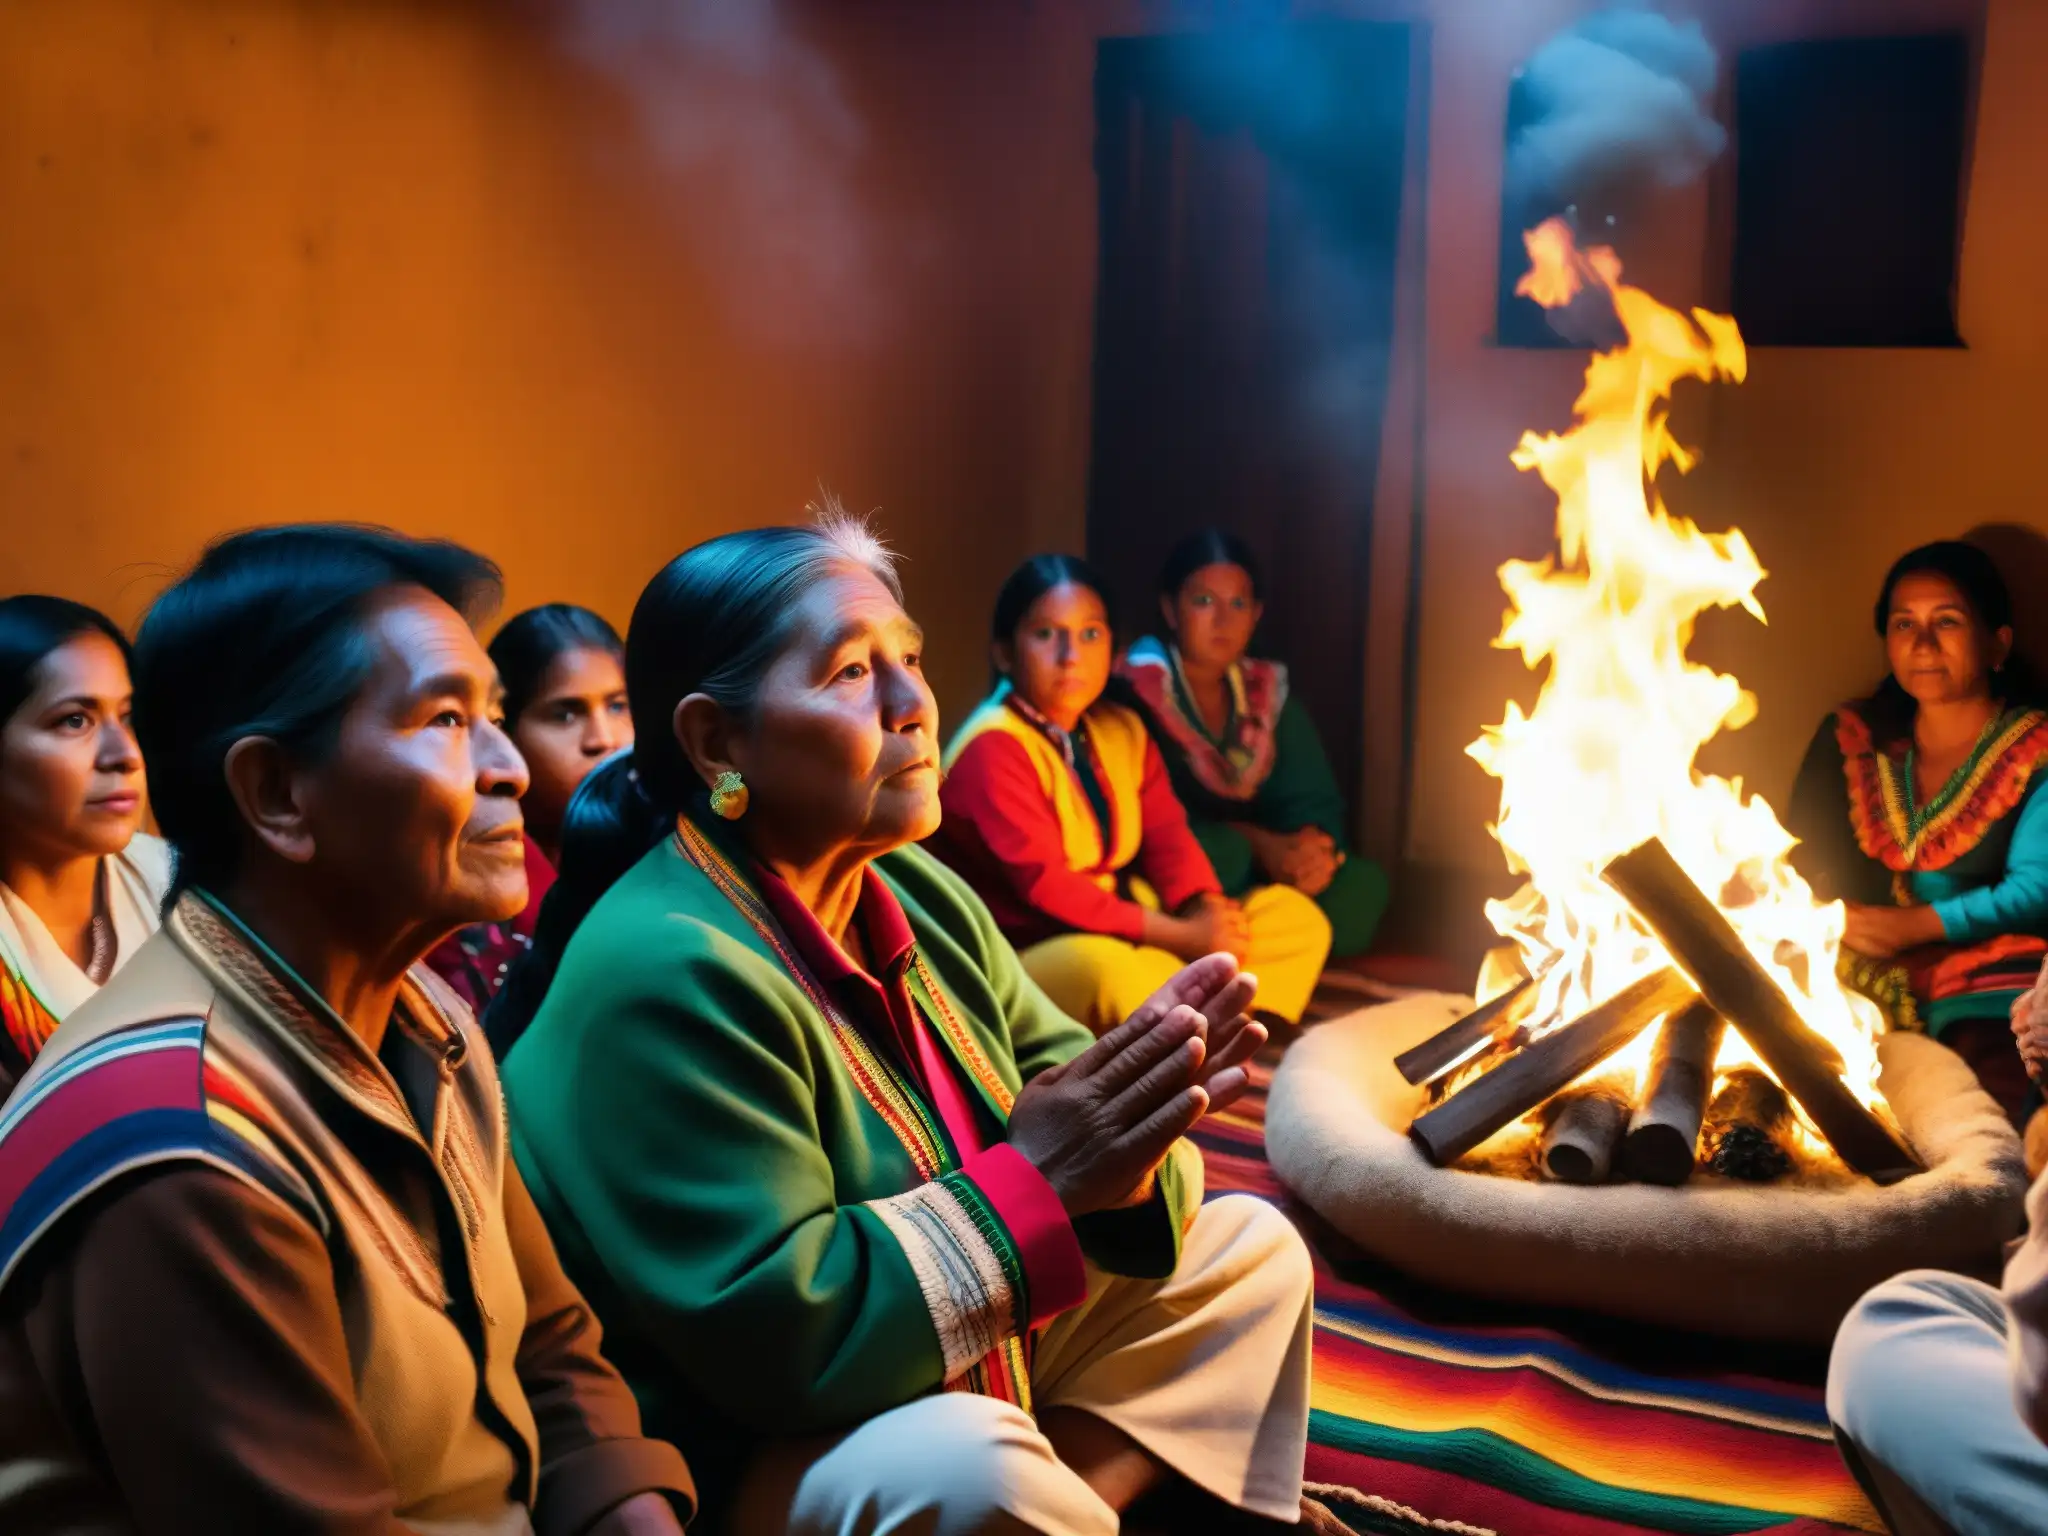 Un anciano cuenta una leyenda viva del folklore boliviano junto a su audiencia, en un ambiente lleno de color y misticismo